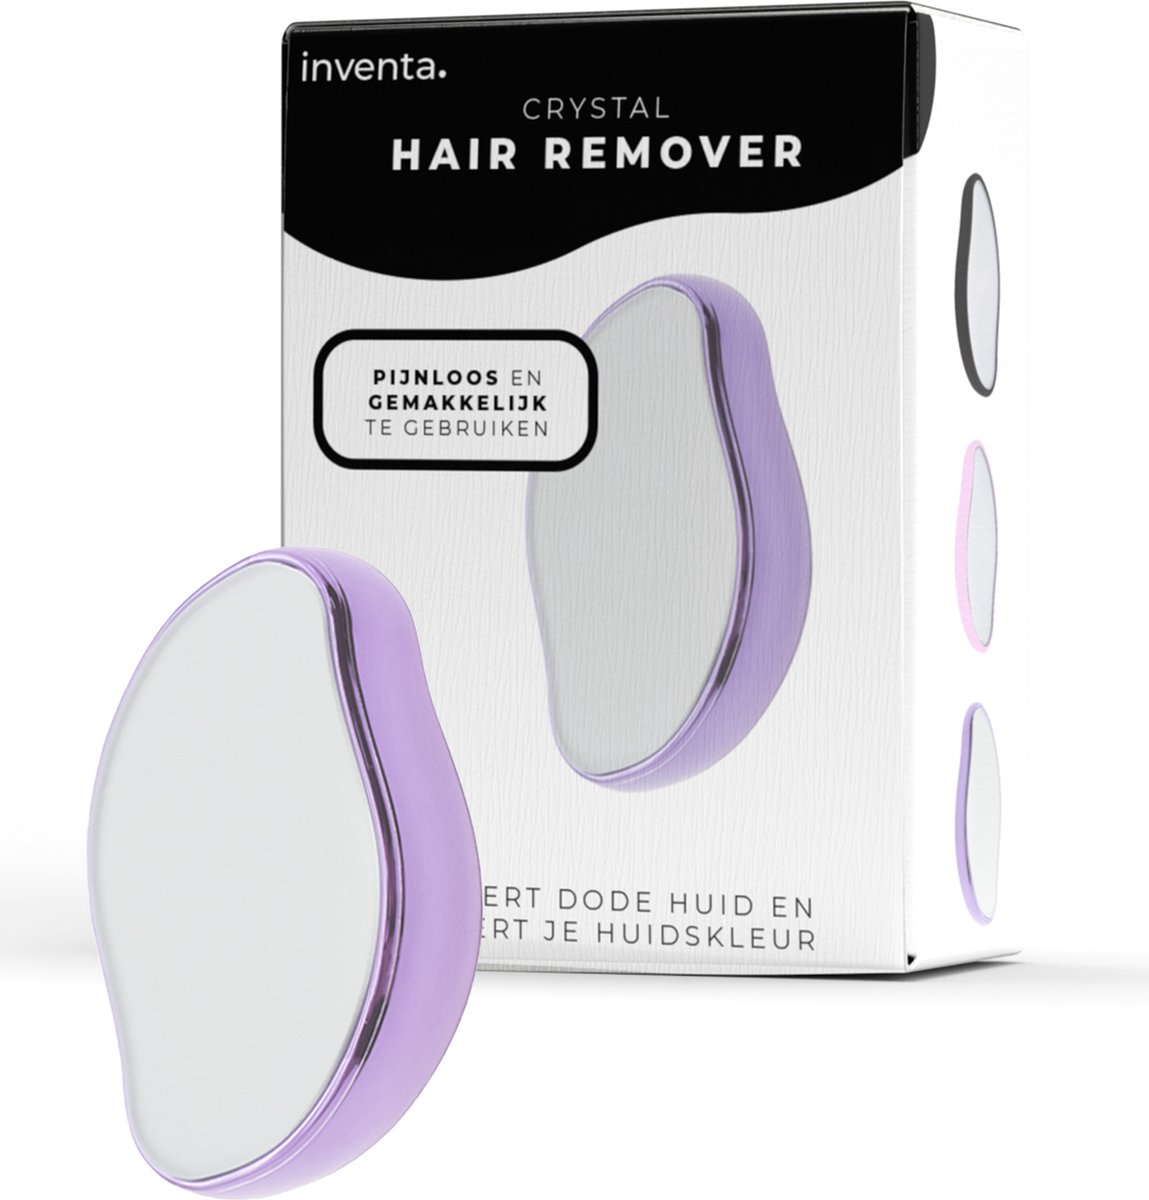 Crystal Hair Removal - Crystal Hair Eraser - KristalPad- Bleame - Scrubi - Crystal Hair Remover - Paars - Haarverwijderaar benen - Inventa